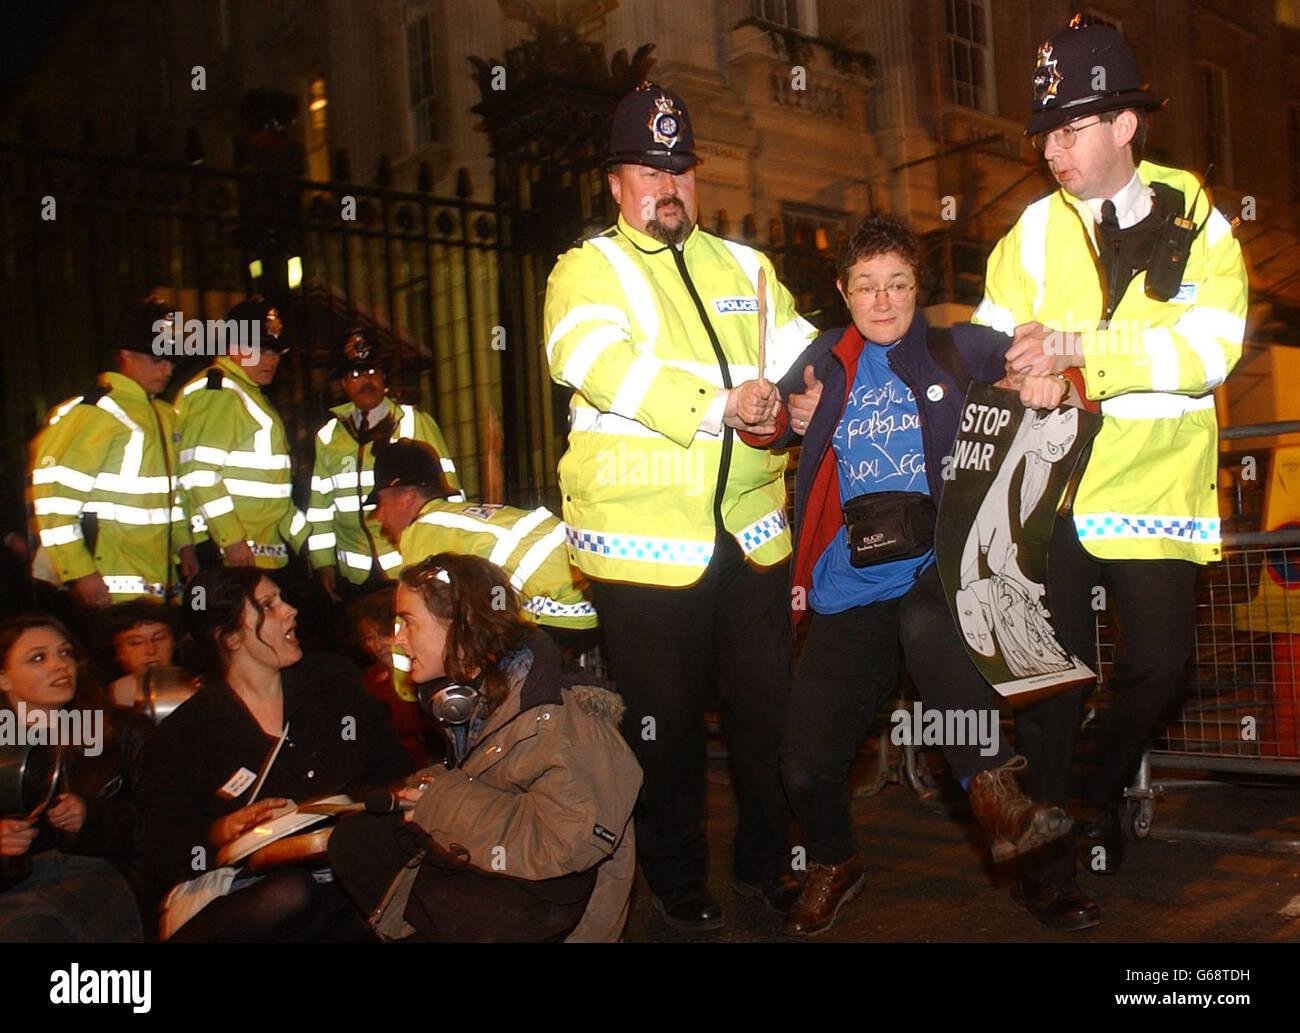 Eine Frau wird während eines Protestes gegen den Krieg im Irak von der Polizei weggeführt, bei dem vor den Toren der Downing Street im Zentrum Londons Kochtöpfe geschlagen wurden. Stockfoto